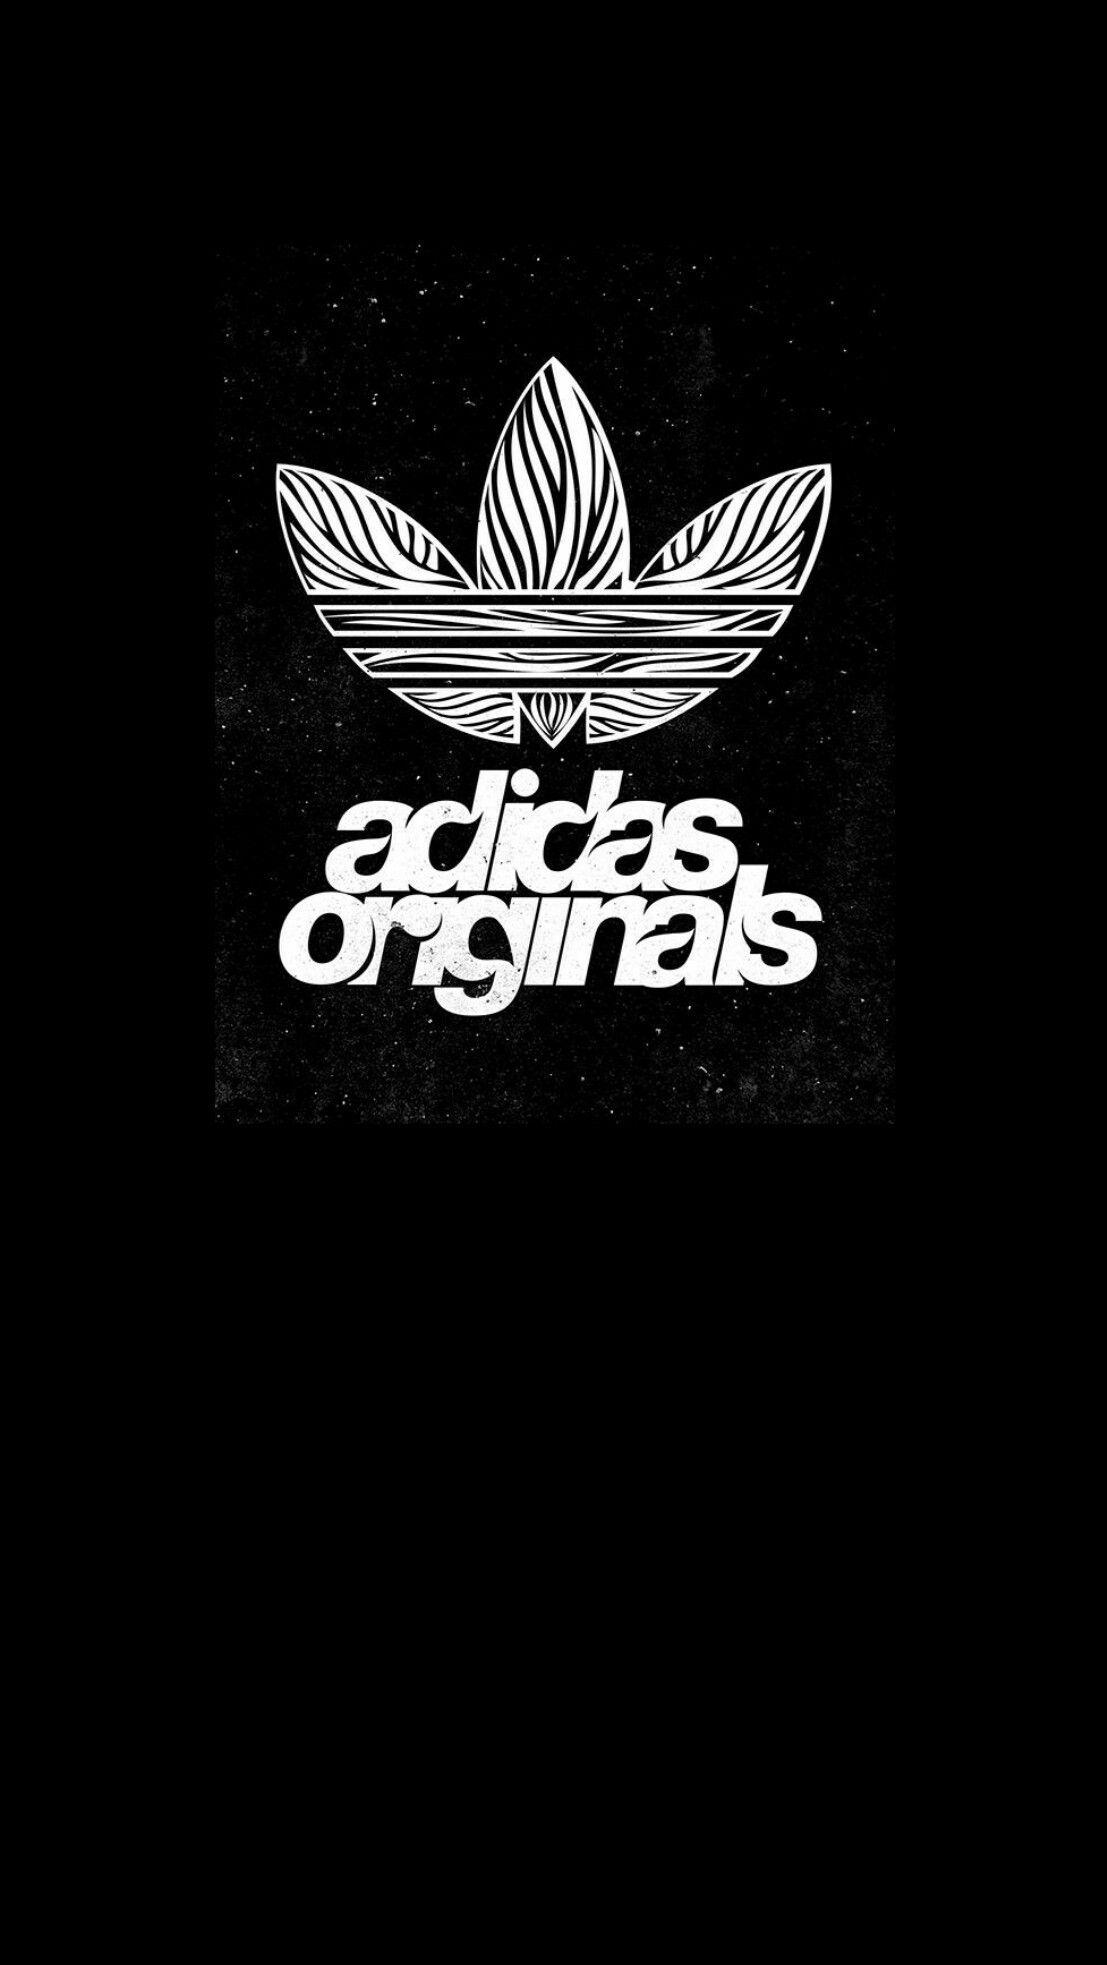 Adidas Wallpapers  Top Những Hình Ảnh Đẹp